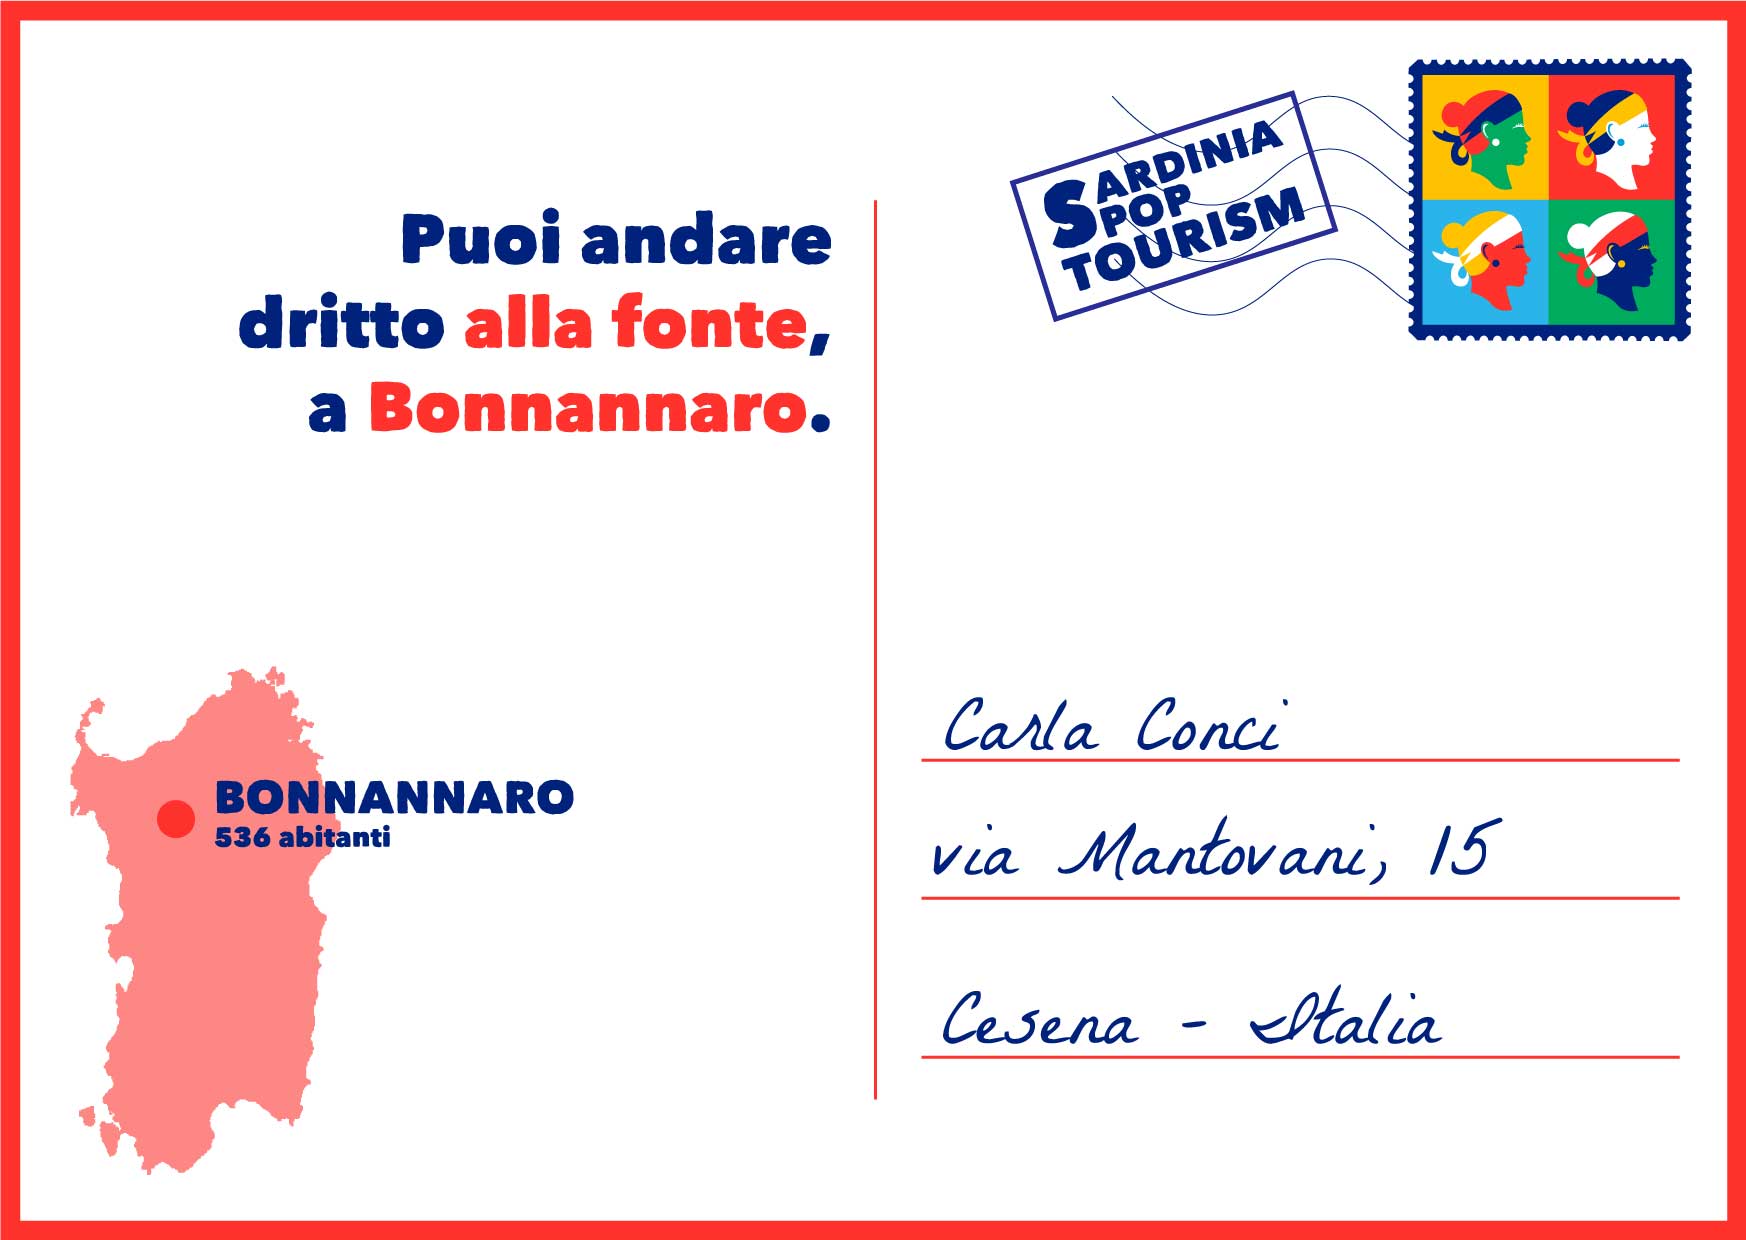 Bonnannaro Meilogu Logudoro Sardegna fonte sorgente campagna acqua cantaru cartolina posta souvenir